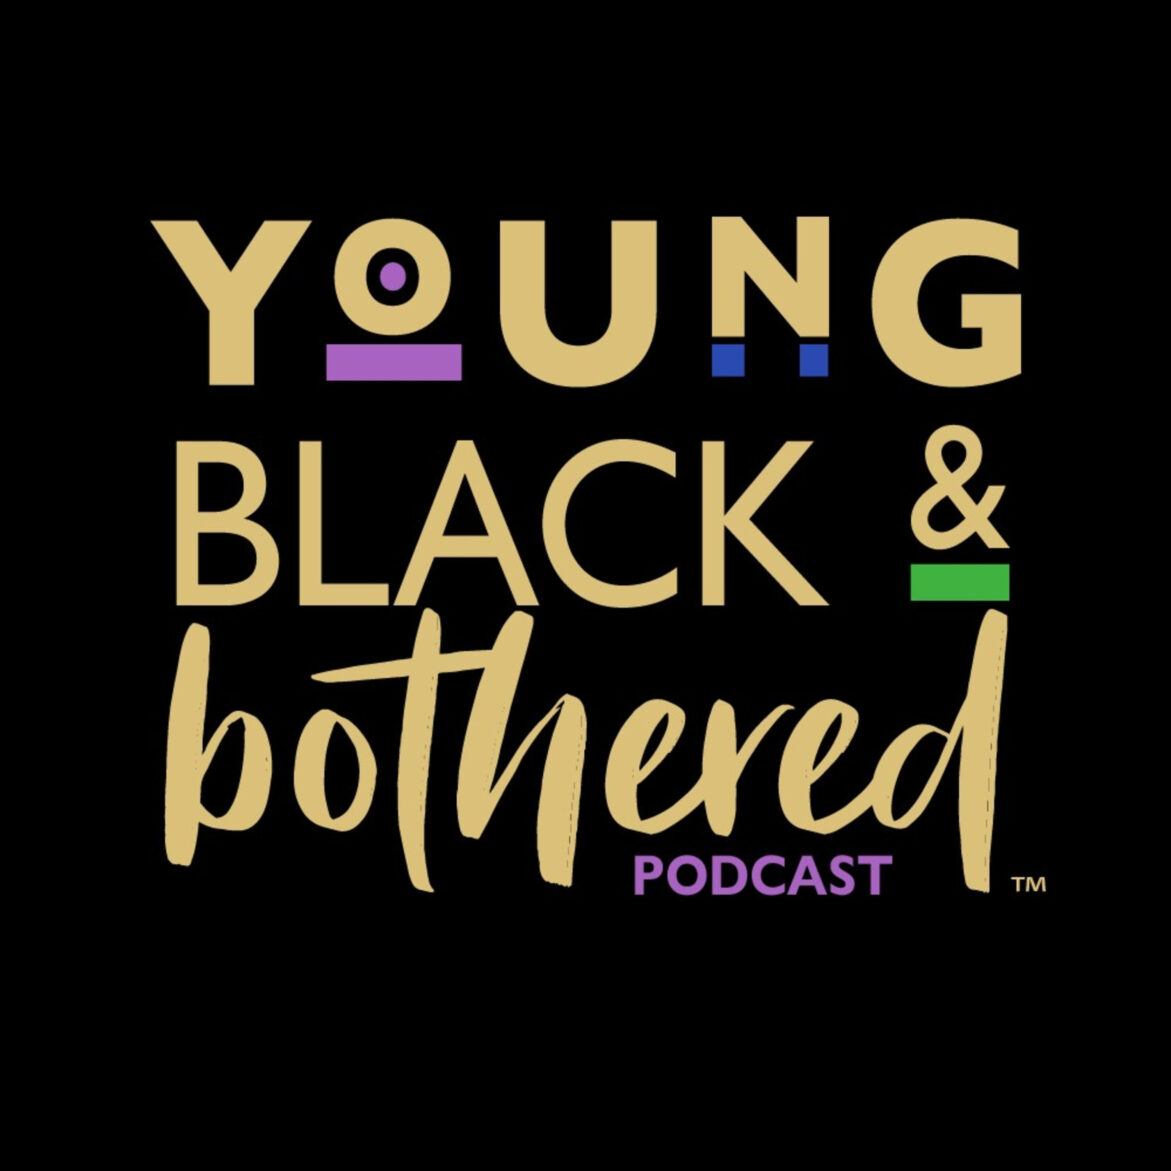 Black Podcasting - 93: A Podcast Has No Name